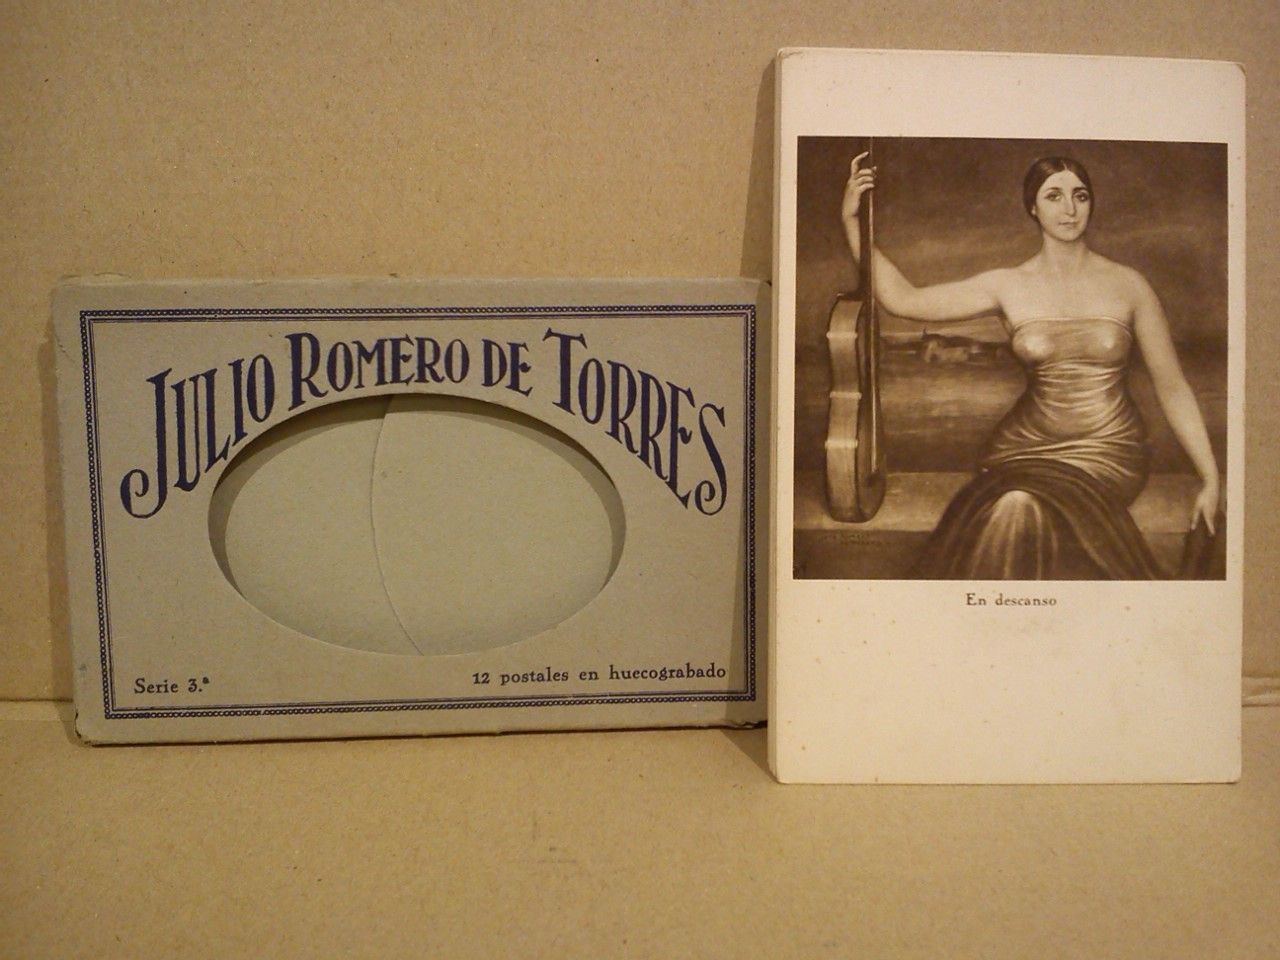 ROMERO DE TORRES, Julio - 12 postales en huecograbado. Serie 3 [con pinturas del famoso artista cordobs, Julio Romero de Torres]